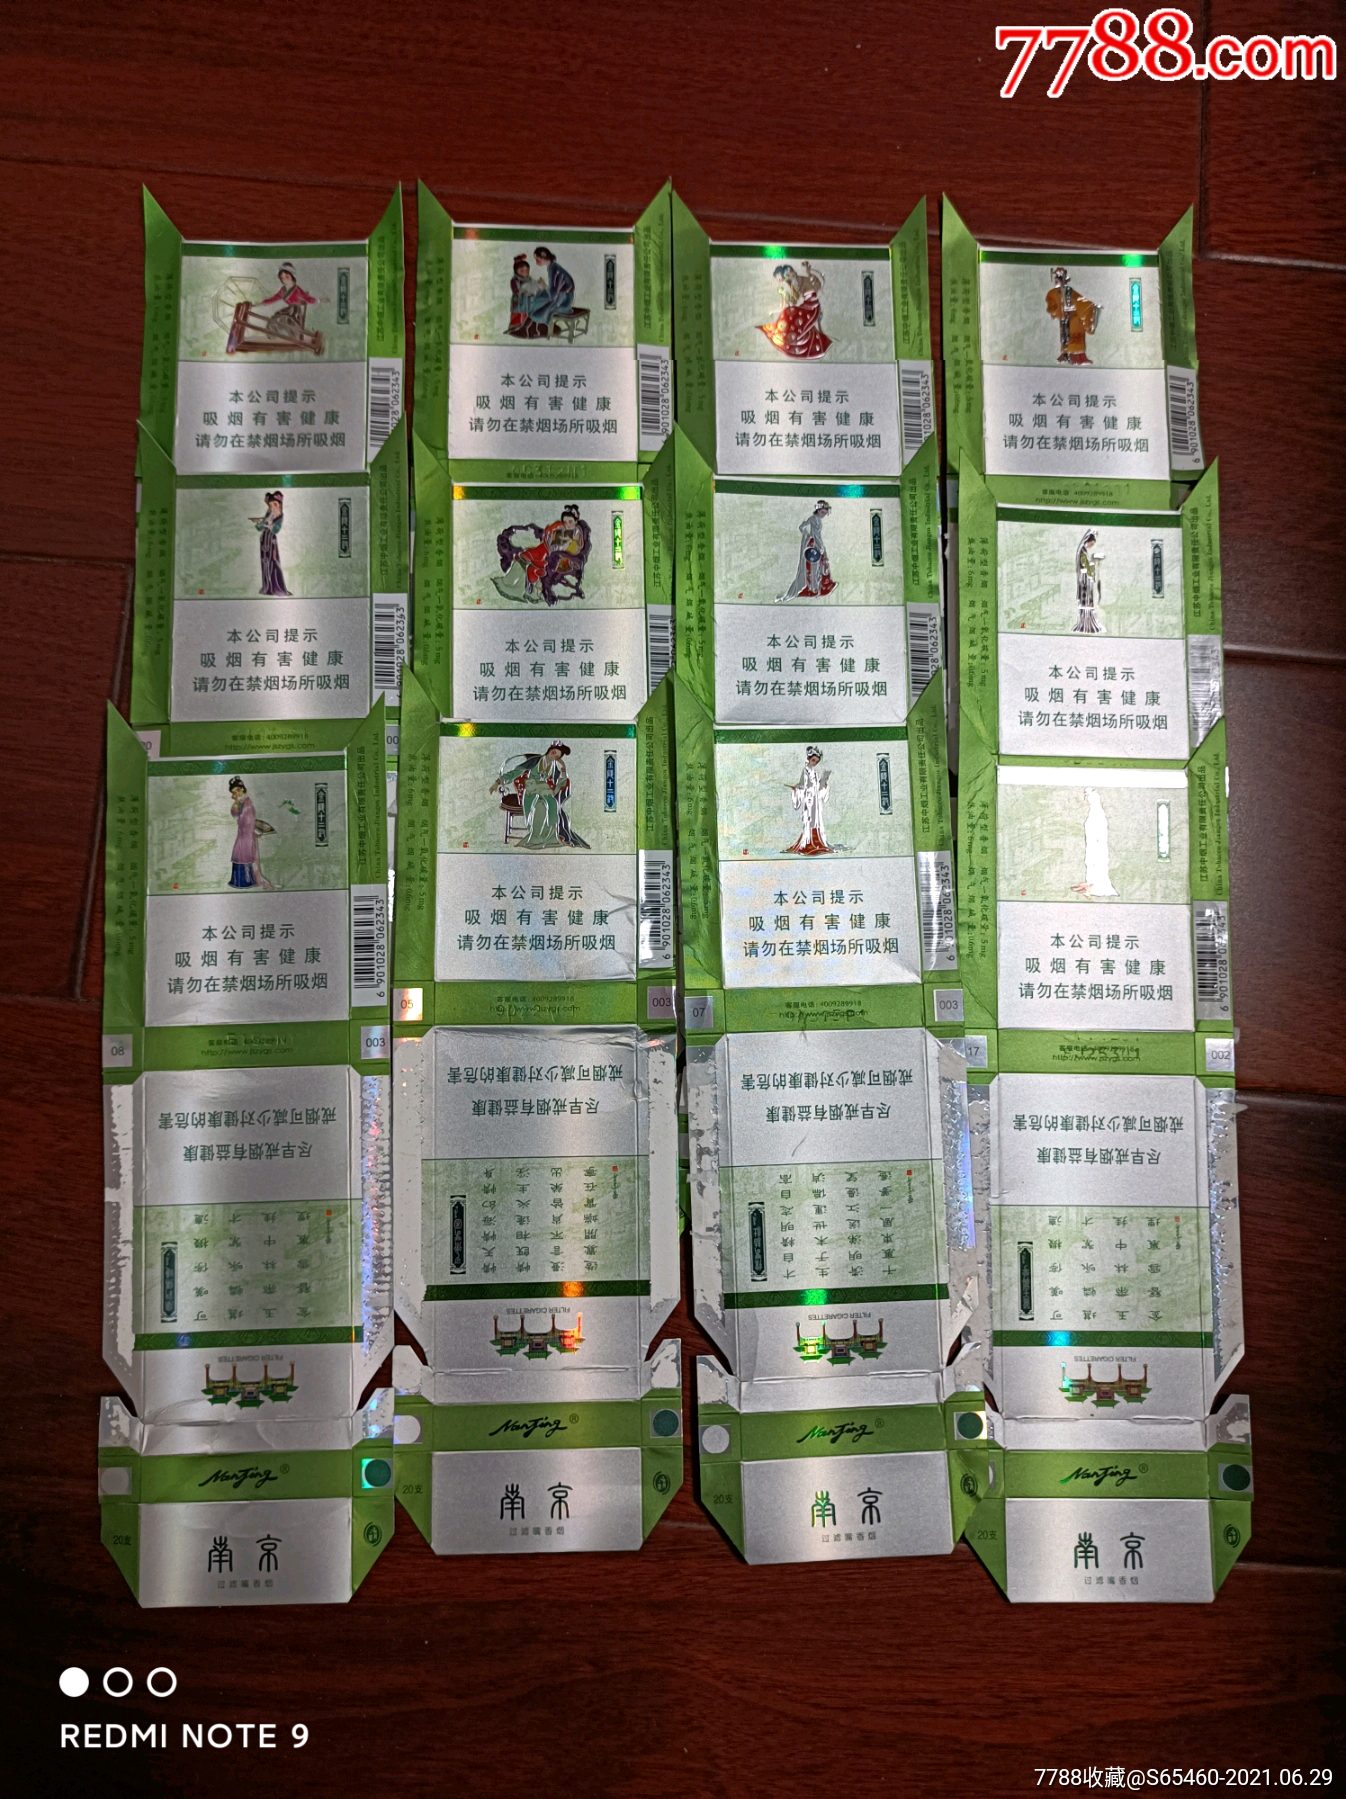 金陵十二钗绿色烟盒图片